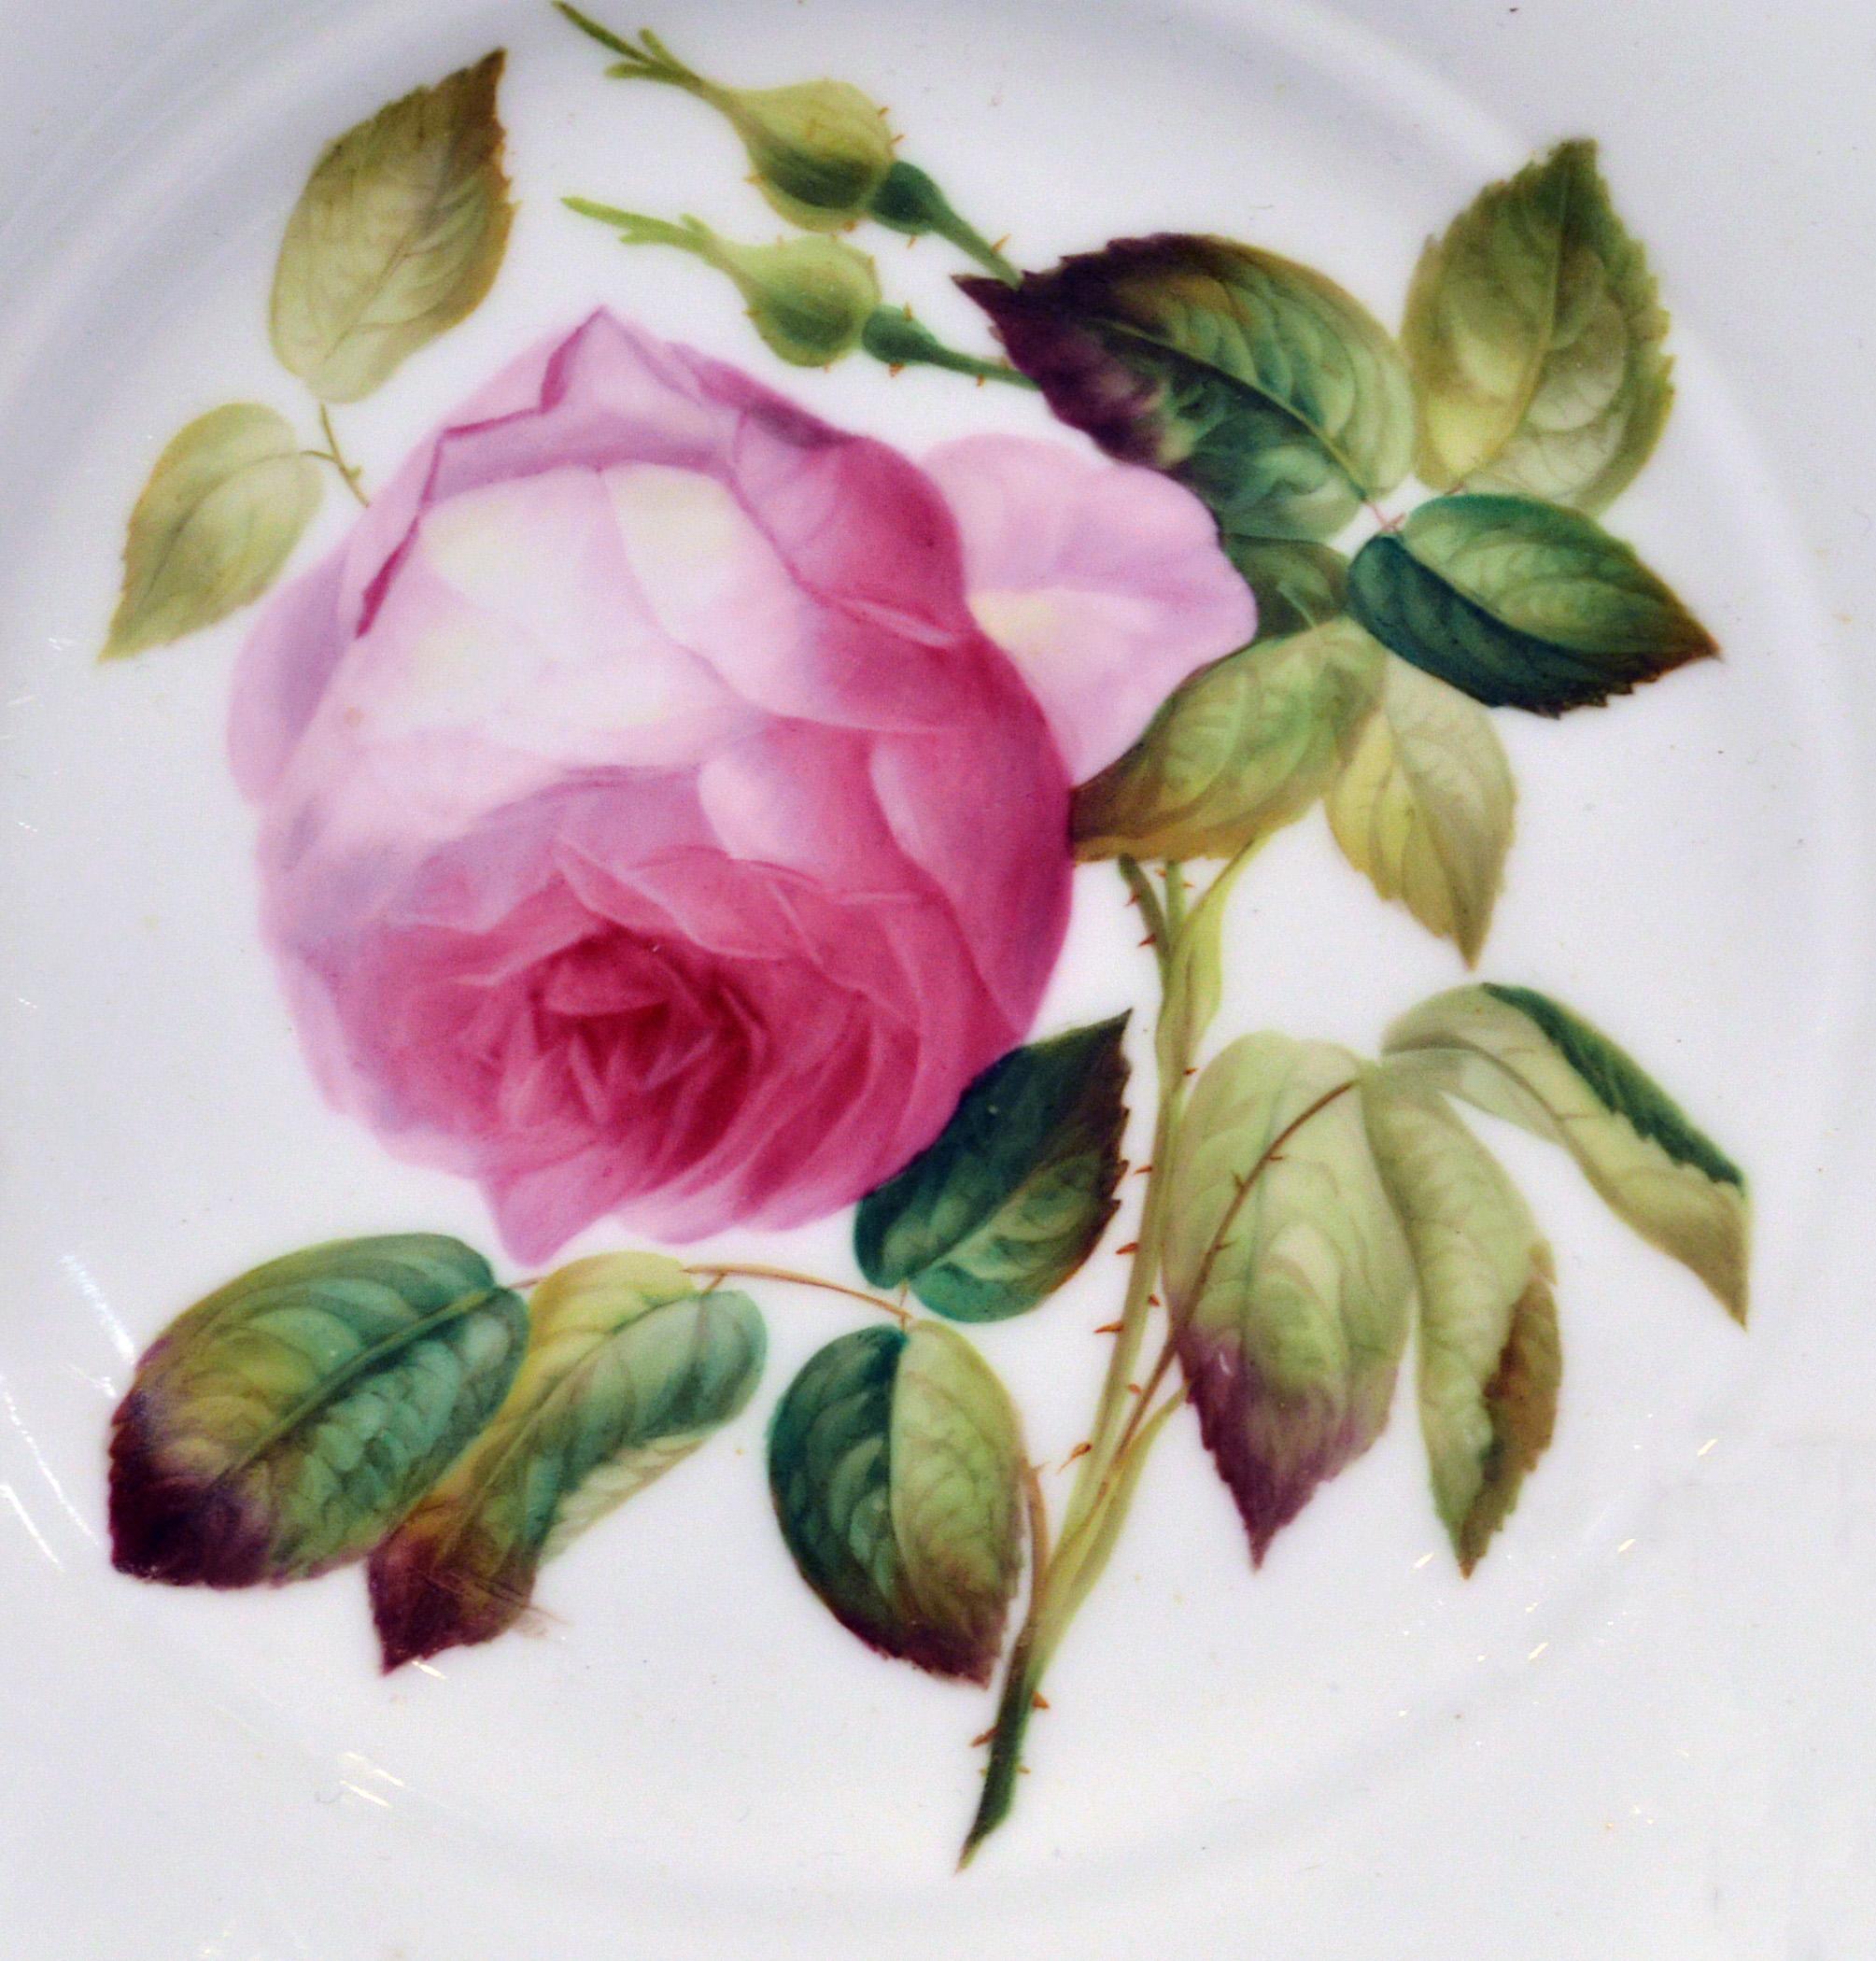 Assiette à spécimen botanique en porcelaine Minton Bone China représentant une rose,
Patron #9762,
vers 1850
(Ref : NY8961C/KRR)

L'assiette en porcelaine fine de Minton représente un spécimen de rose dont le nom figure au revers. L'assiette